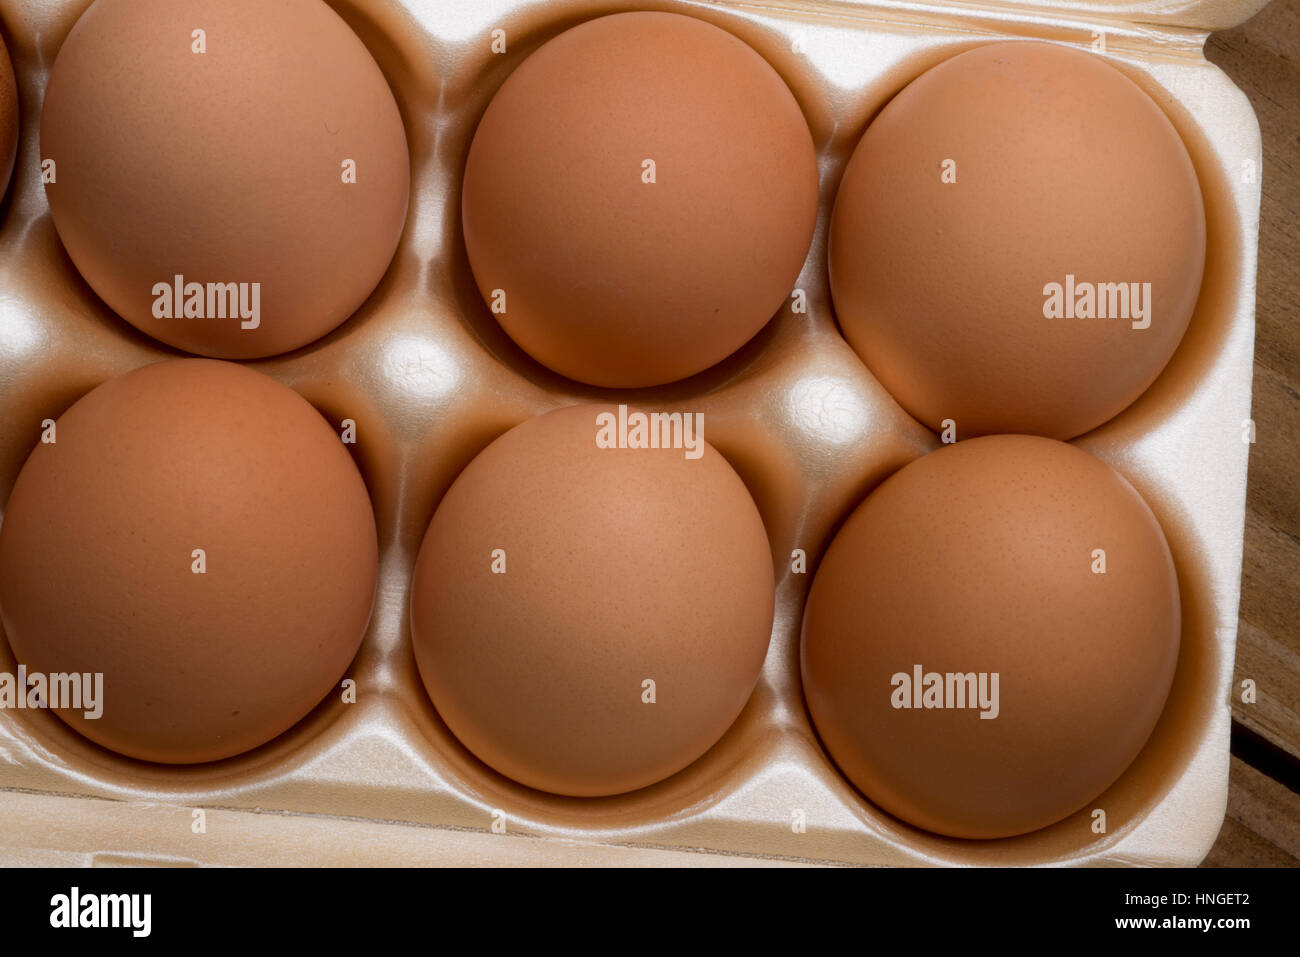 brown chicken eggs in a carton Stock Photo